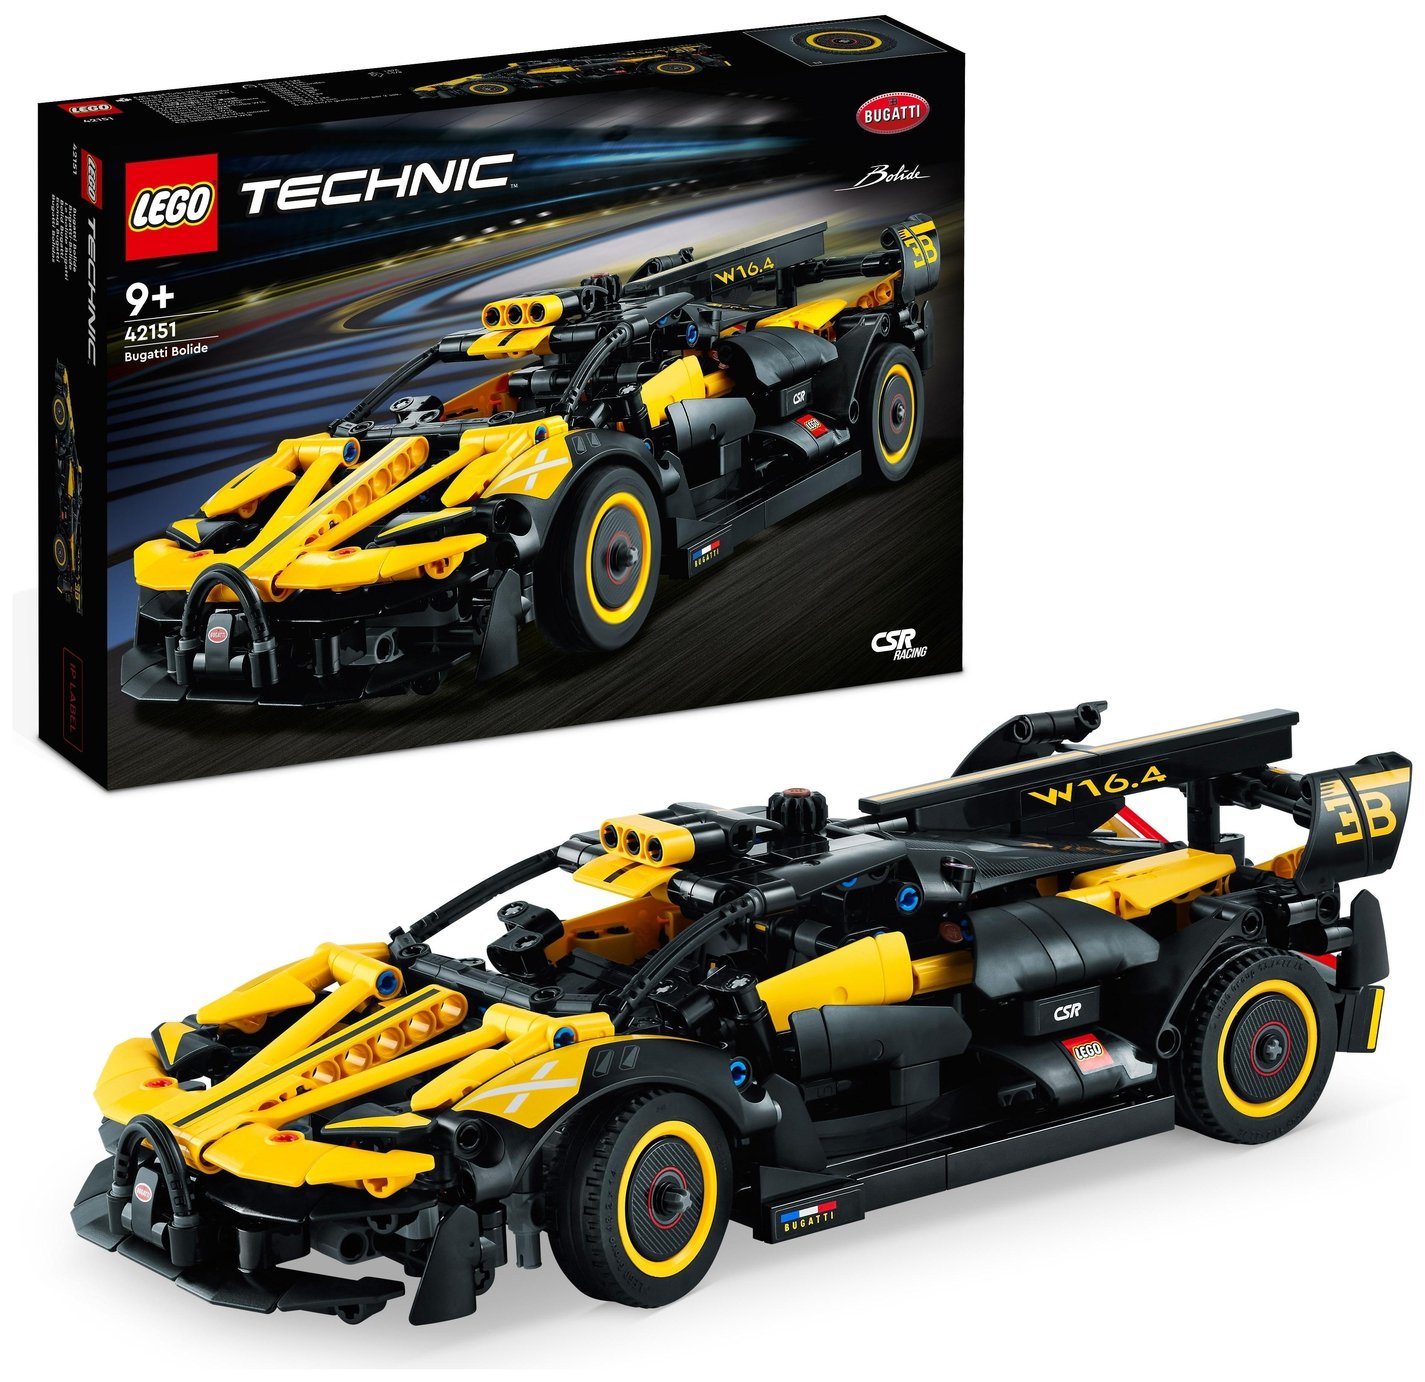 LEGO Technic Bugatti Bolide Model Car Toy Building Set 42151